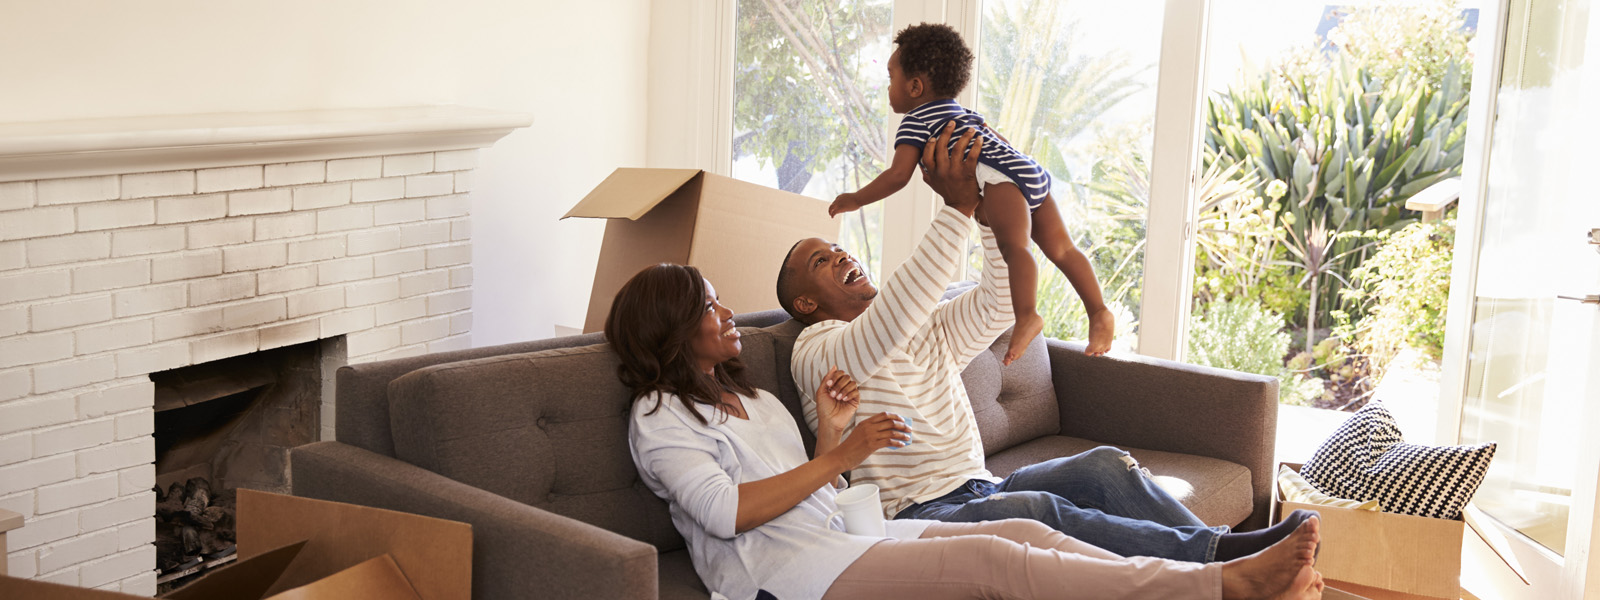 familia en una sala de estar jugando y sujetando a un niño en alto